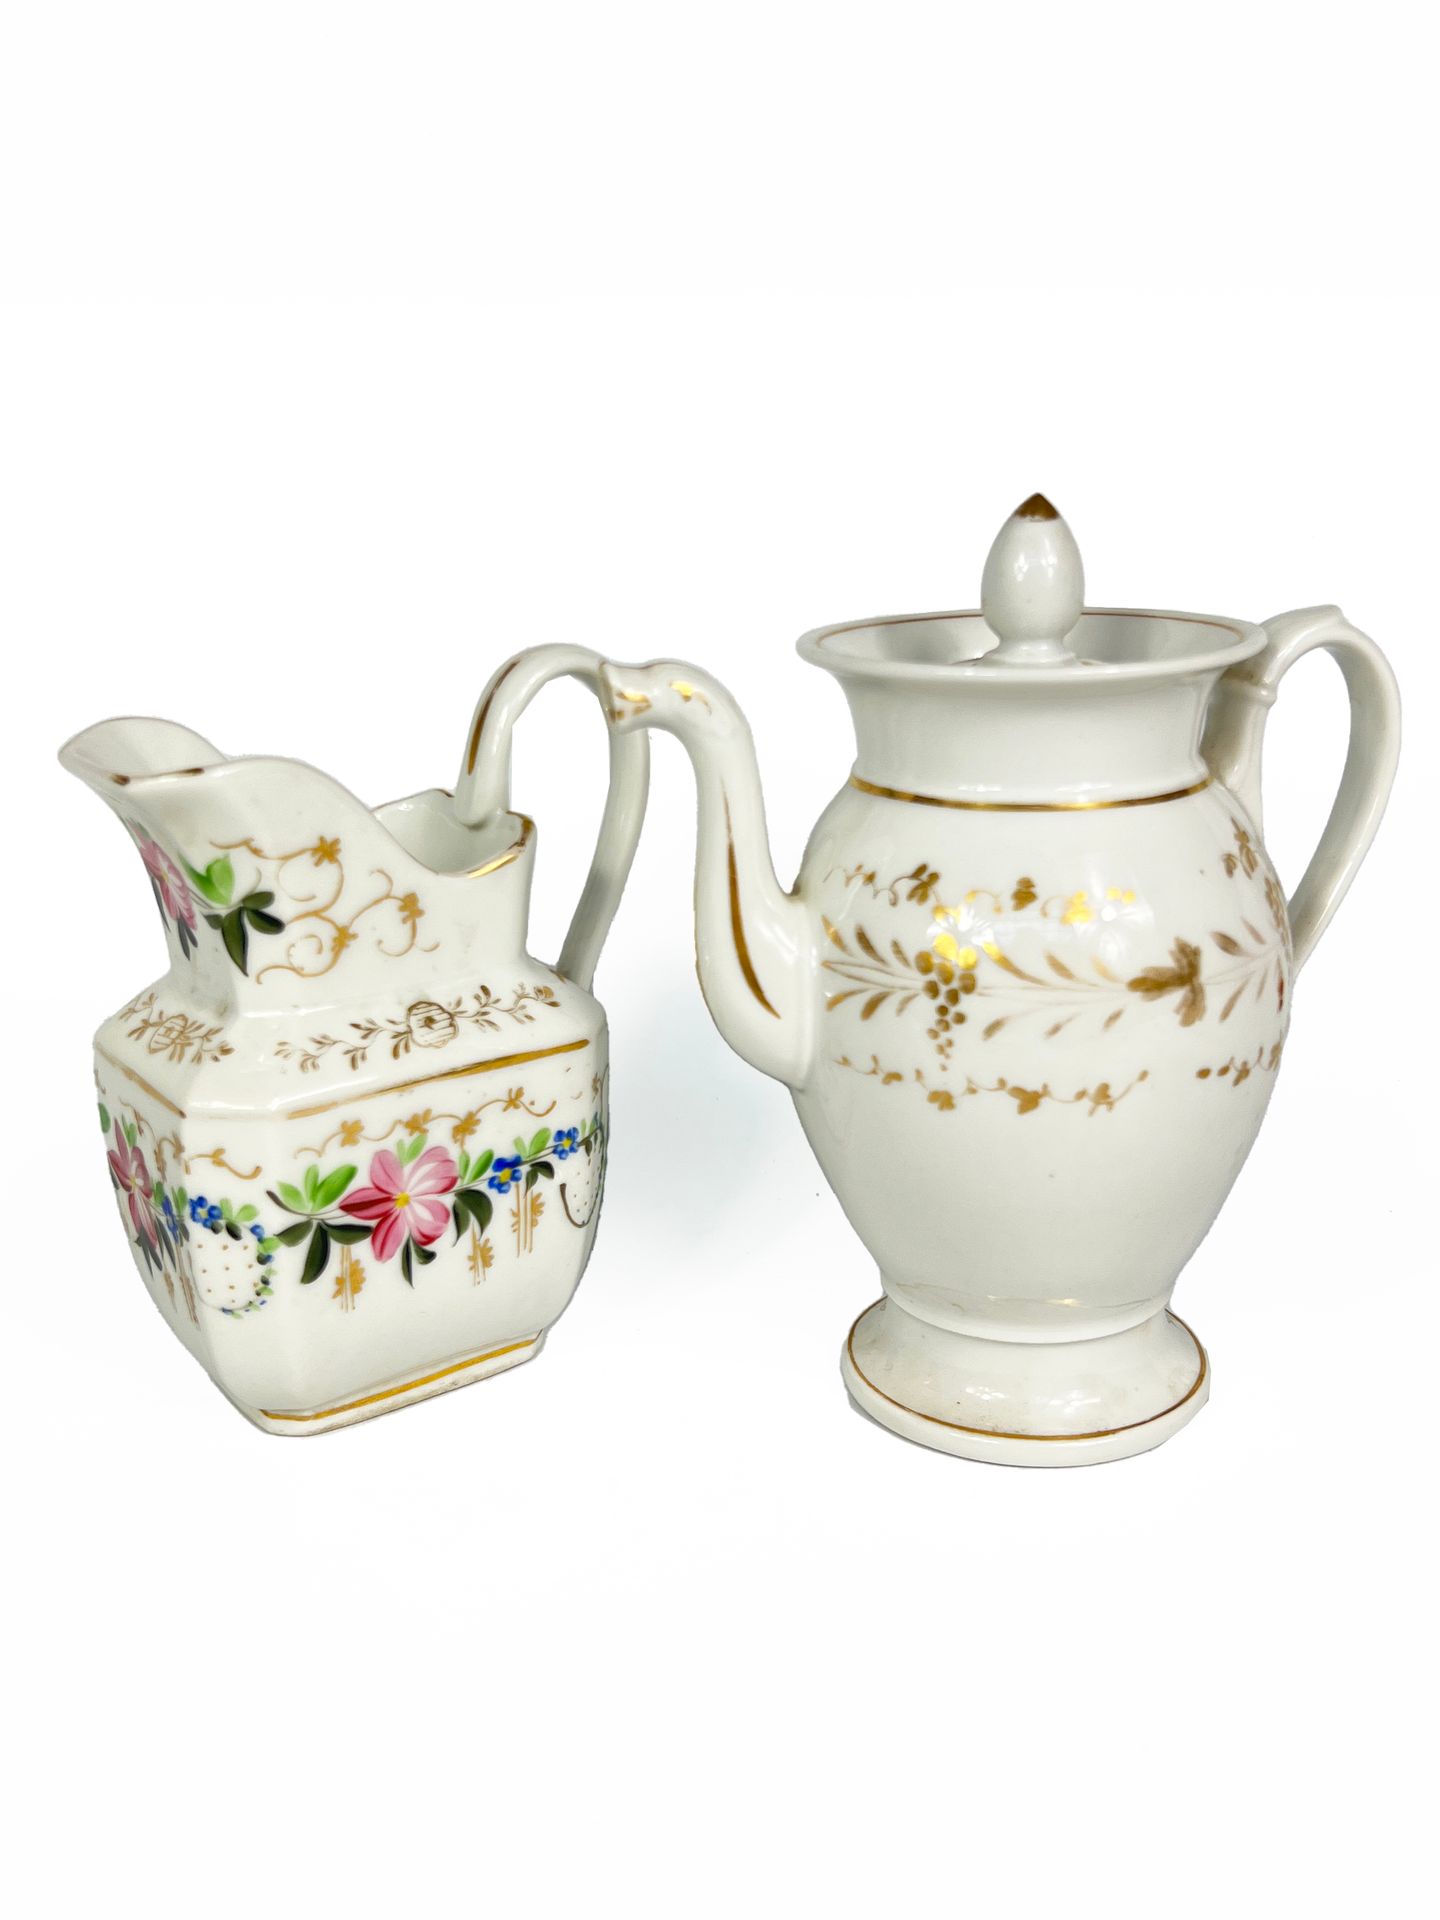 Null 巴黎，19世纪

一套瓷器茶壶和牛奶壶，有多色花和金色亮点的装饰。

H.14至19厘米

磨损到装饰。